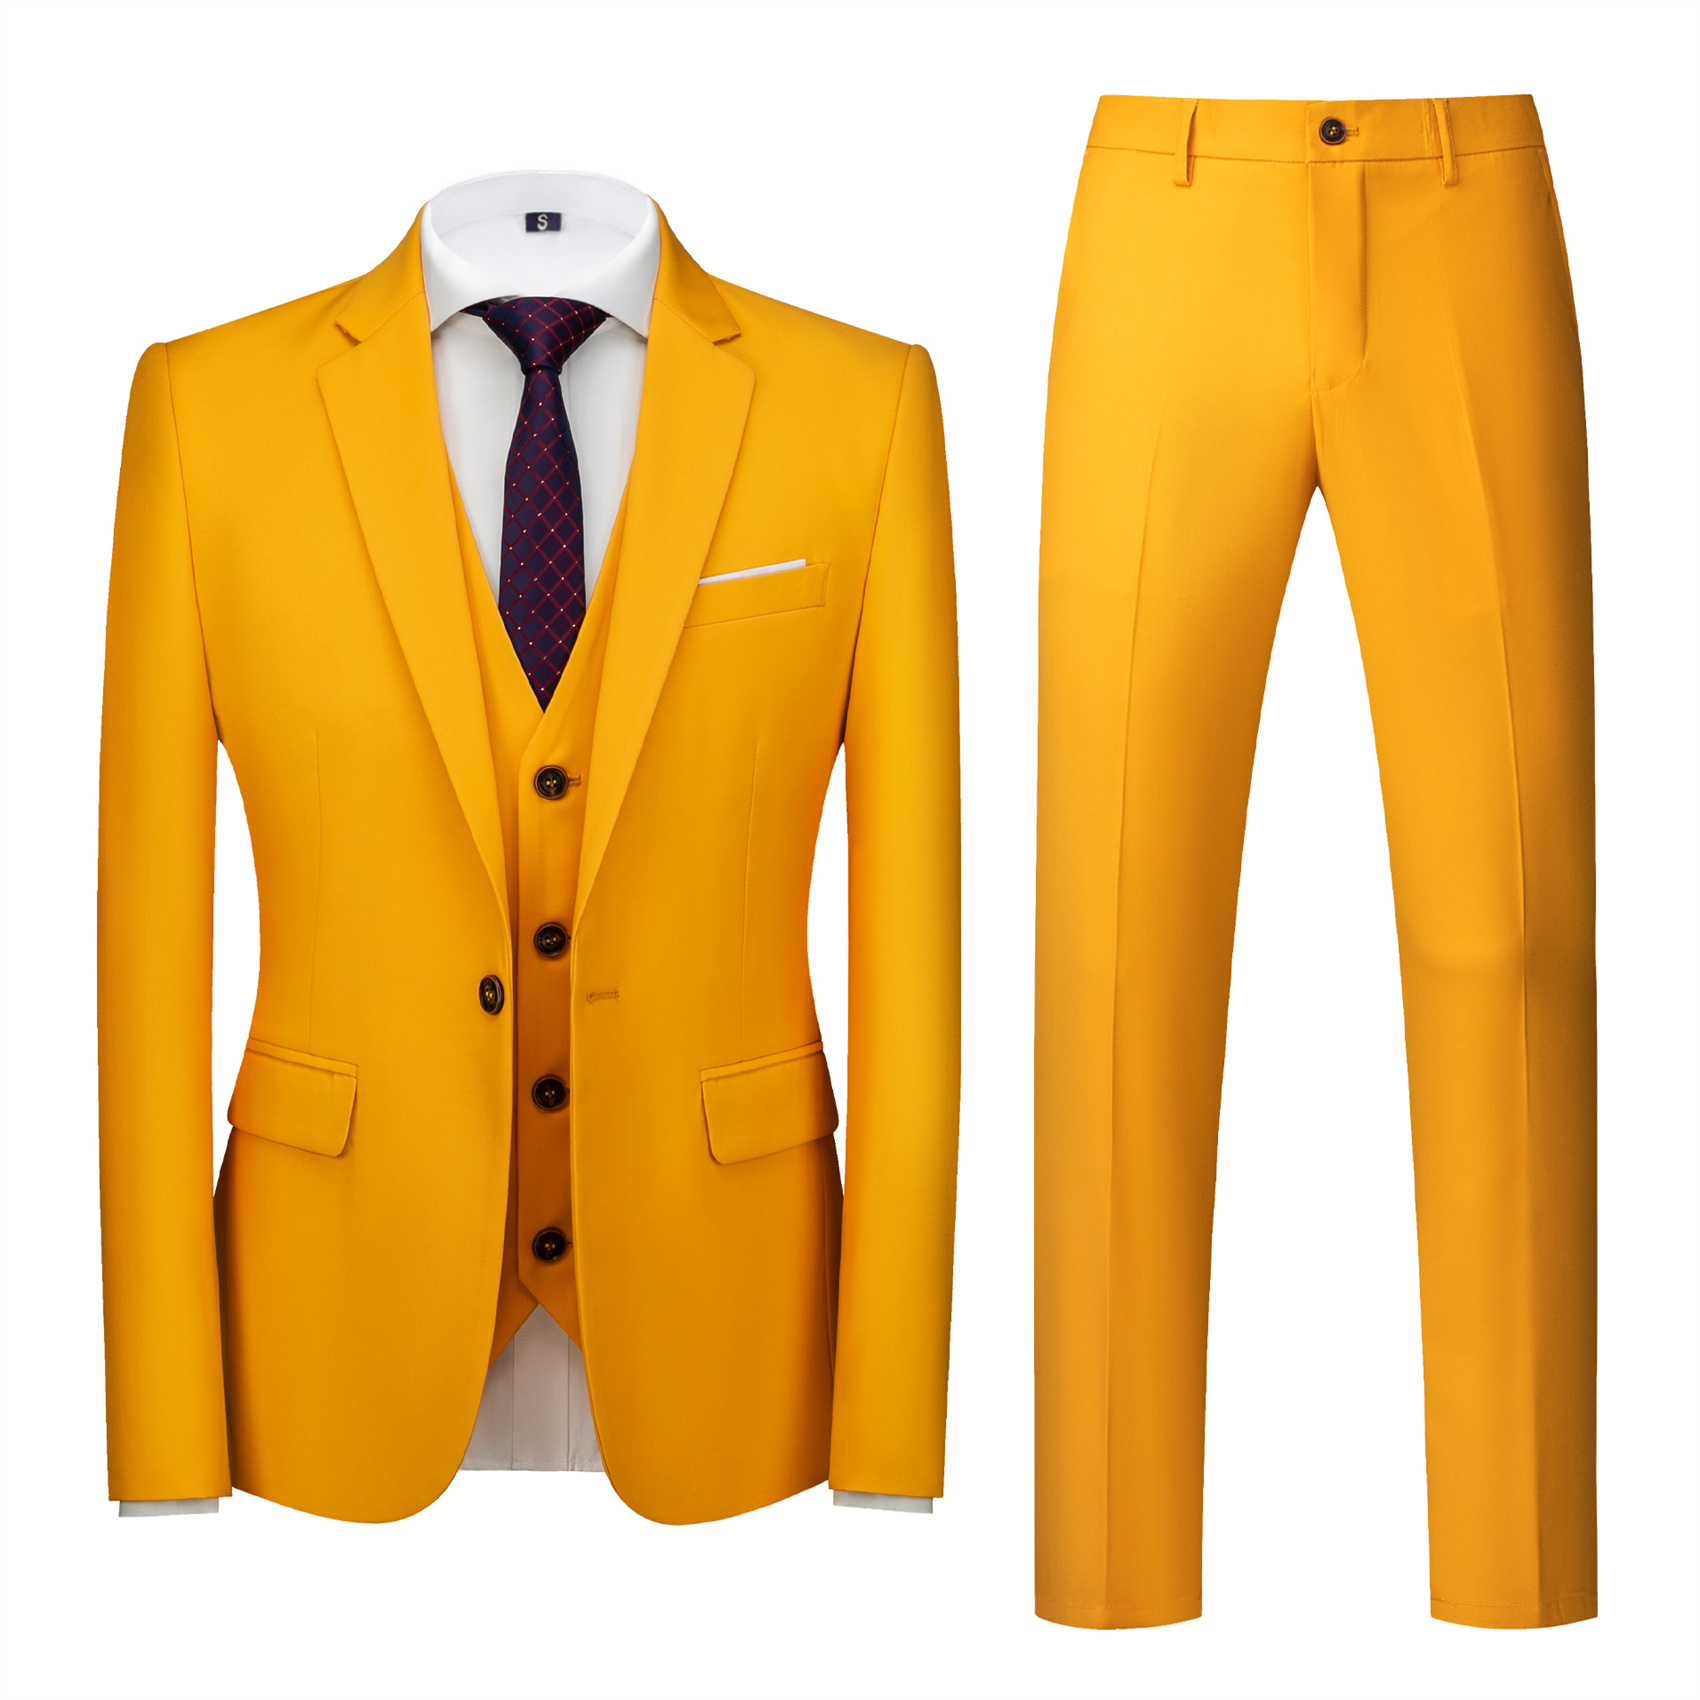 3 Piece Yellow Suit for Men, Slim Fit (1 Button)